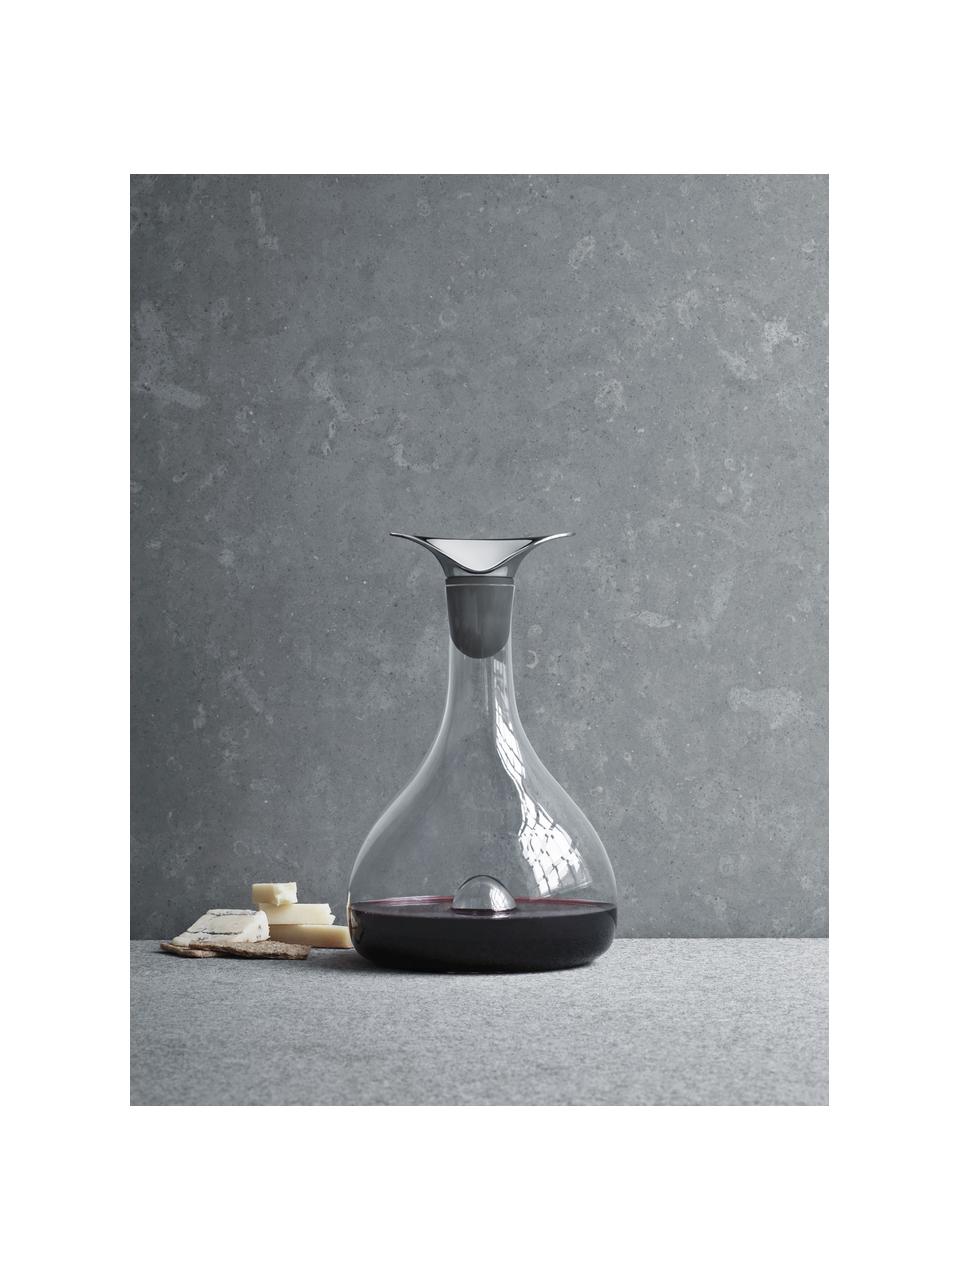 Kristall-Dekanter Wine, 1.3 L, Silberfarben, Transparent, 1.3 L